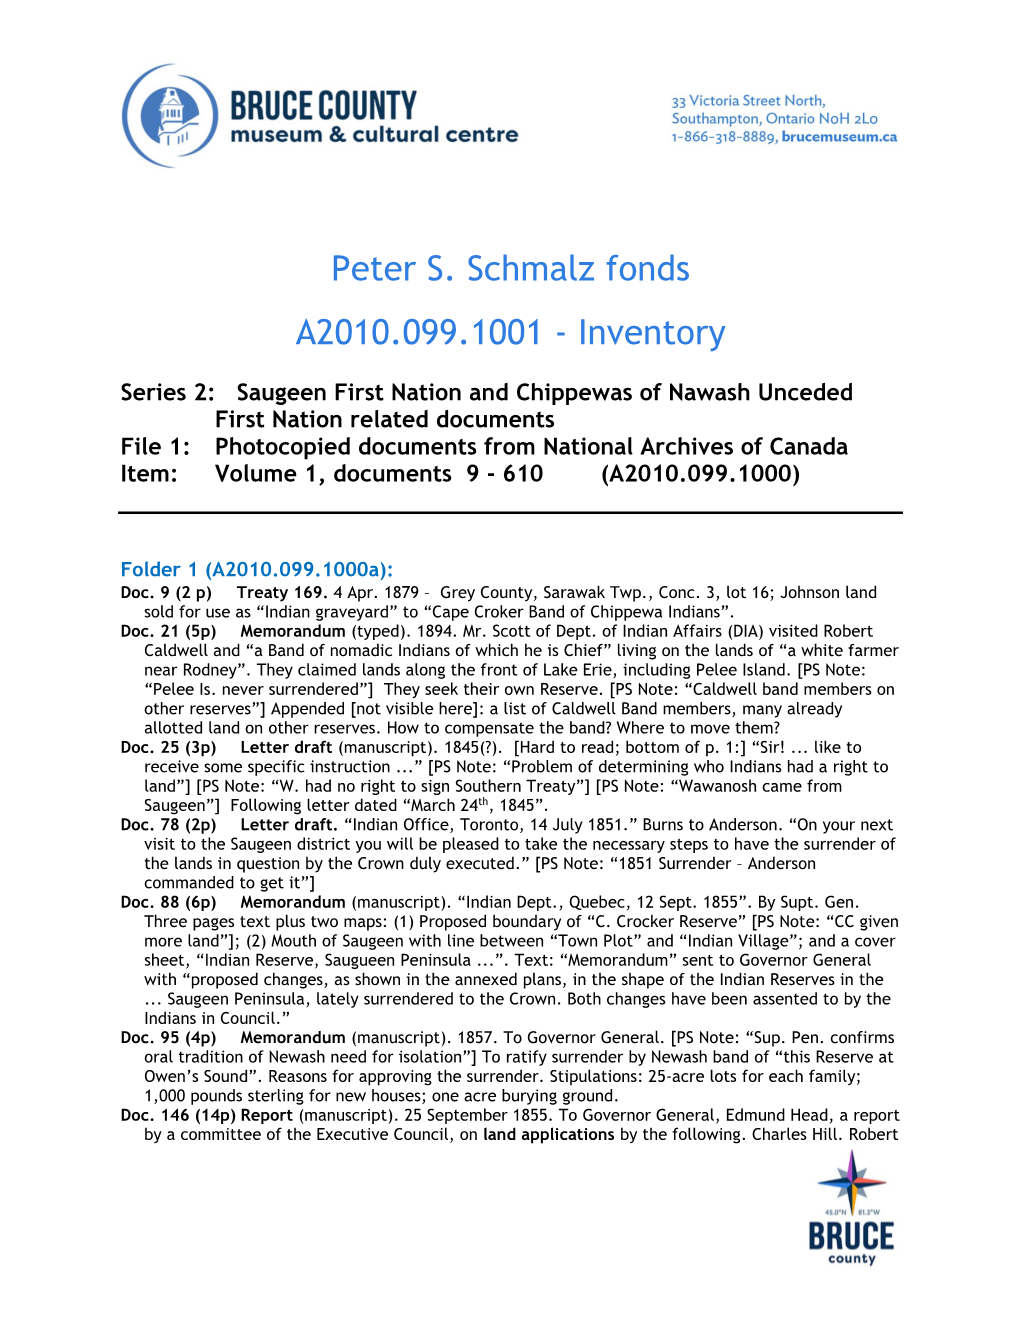 Peter S. Schmalz Fonds A2010.099.1001 - Inventory